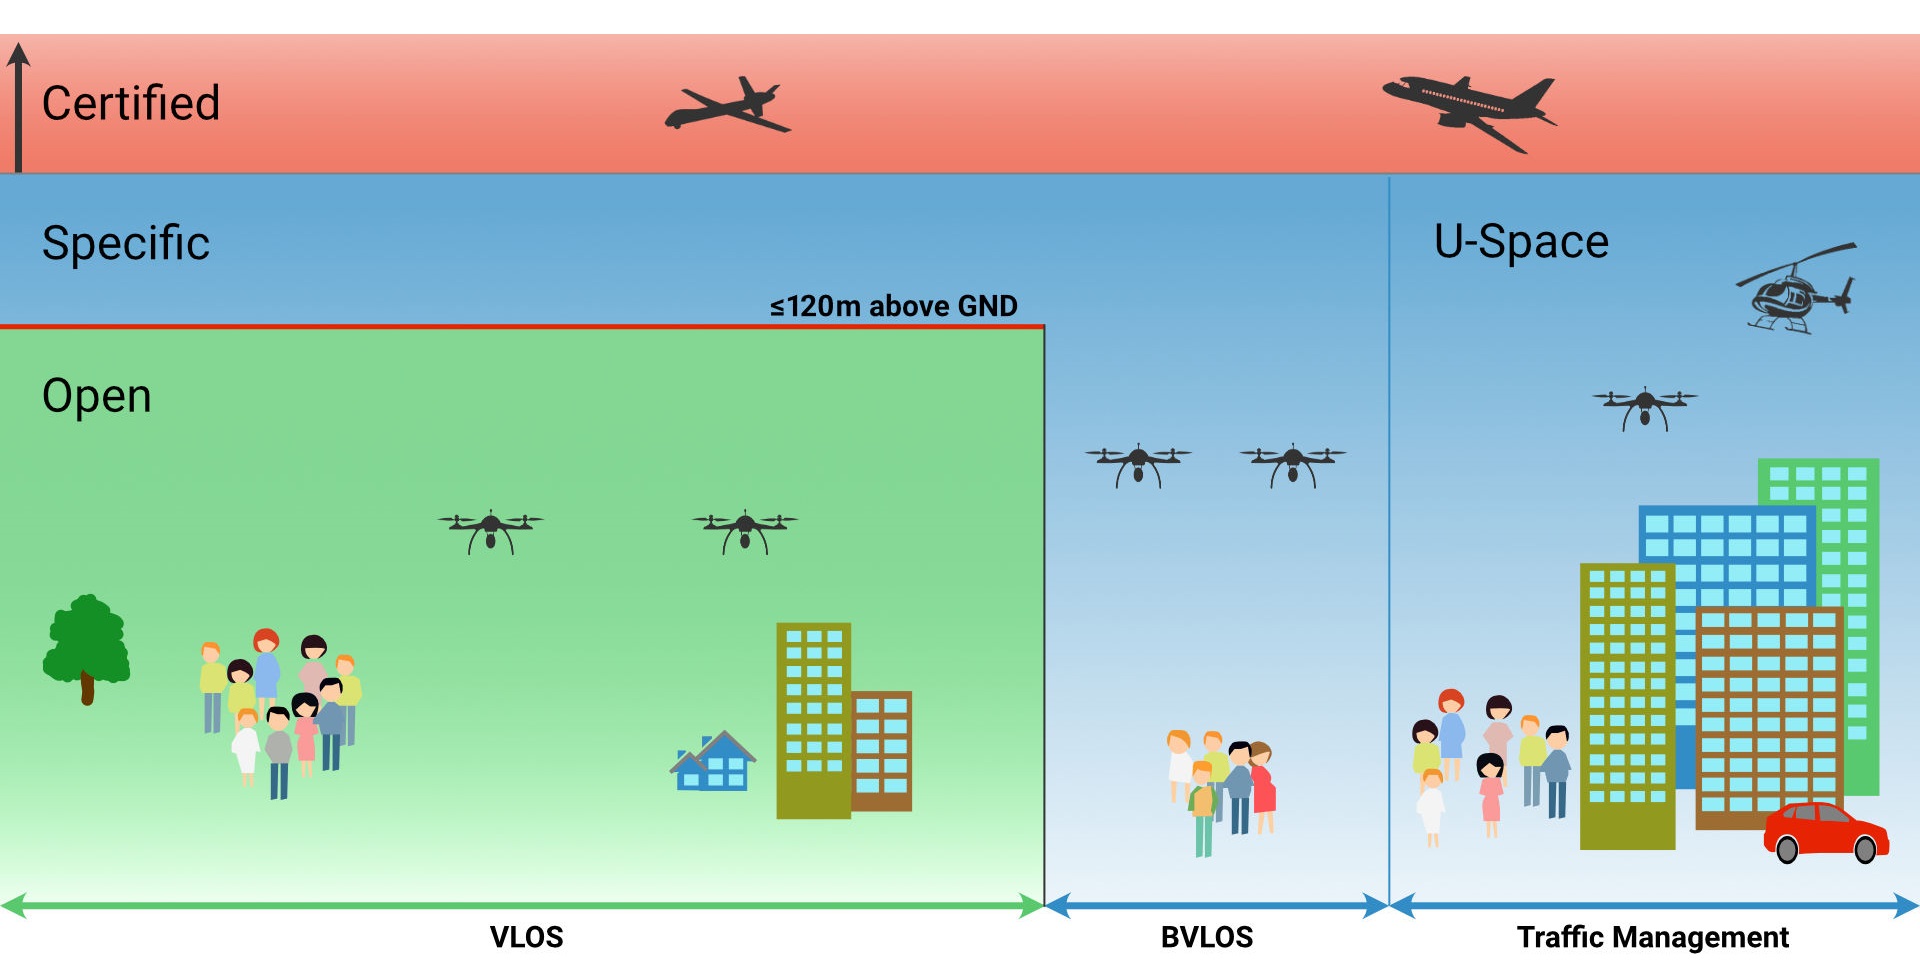 Das EU-Recht unterscheidet drei Kategorien für den Betrieb von Drohnen